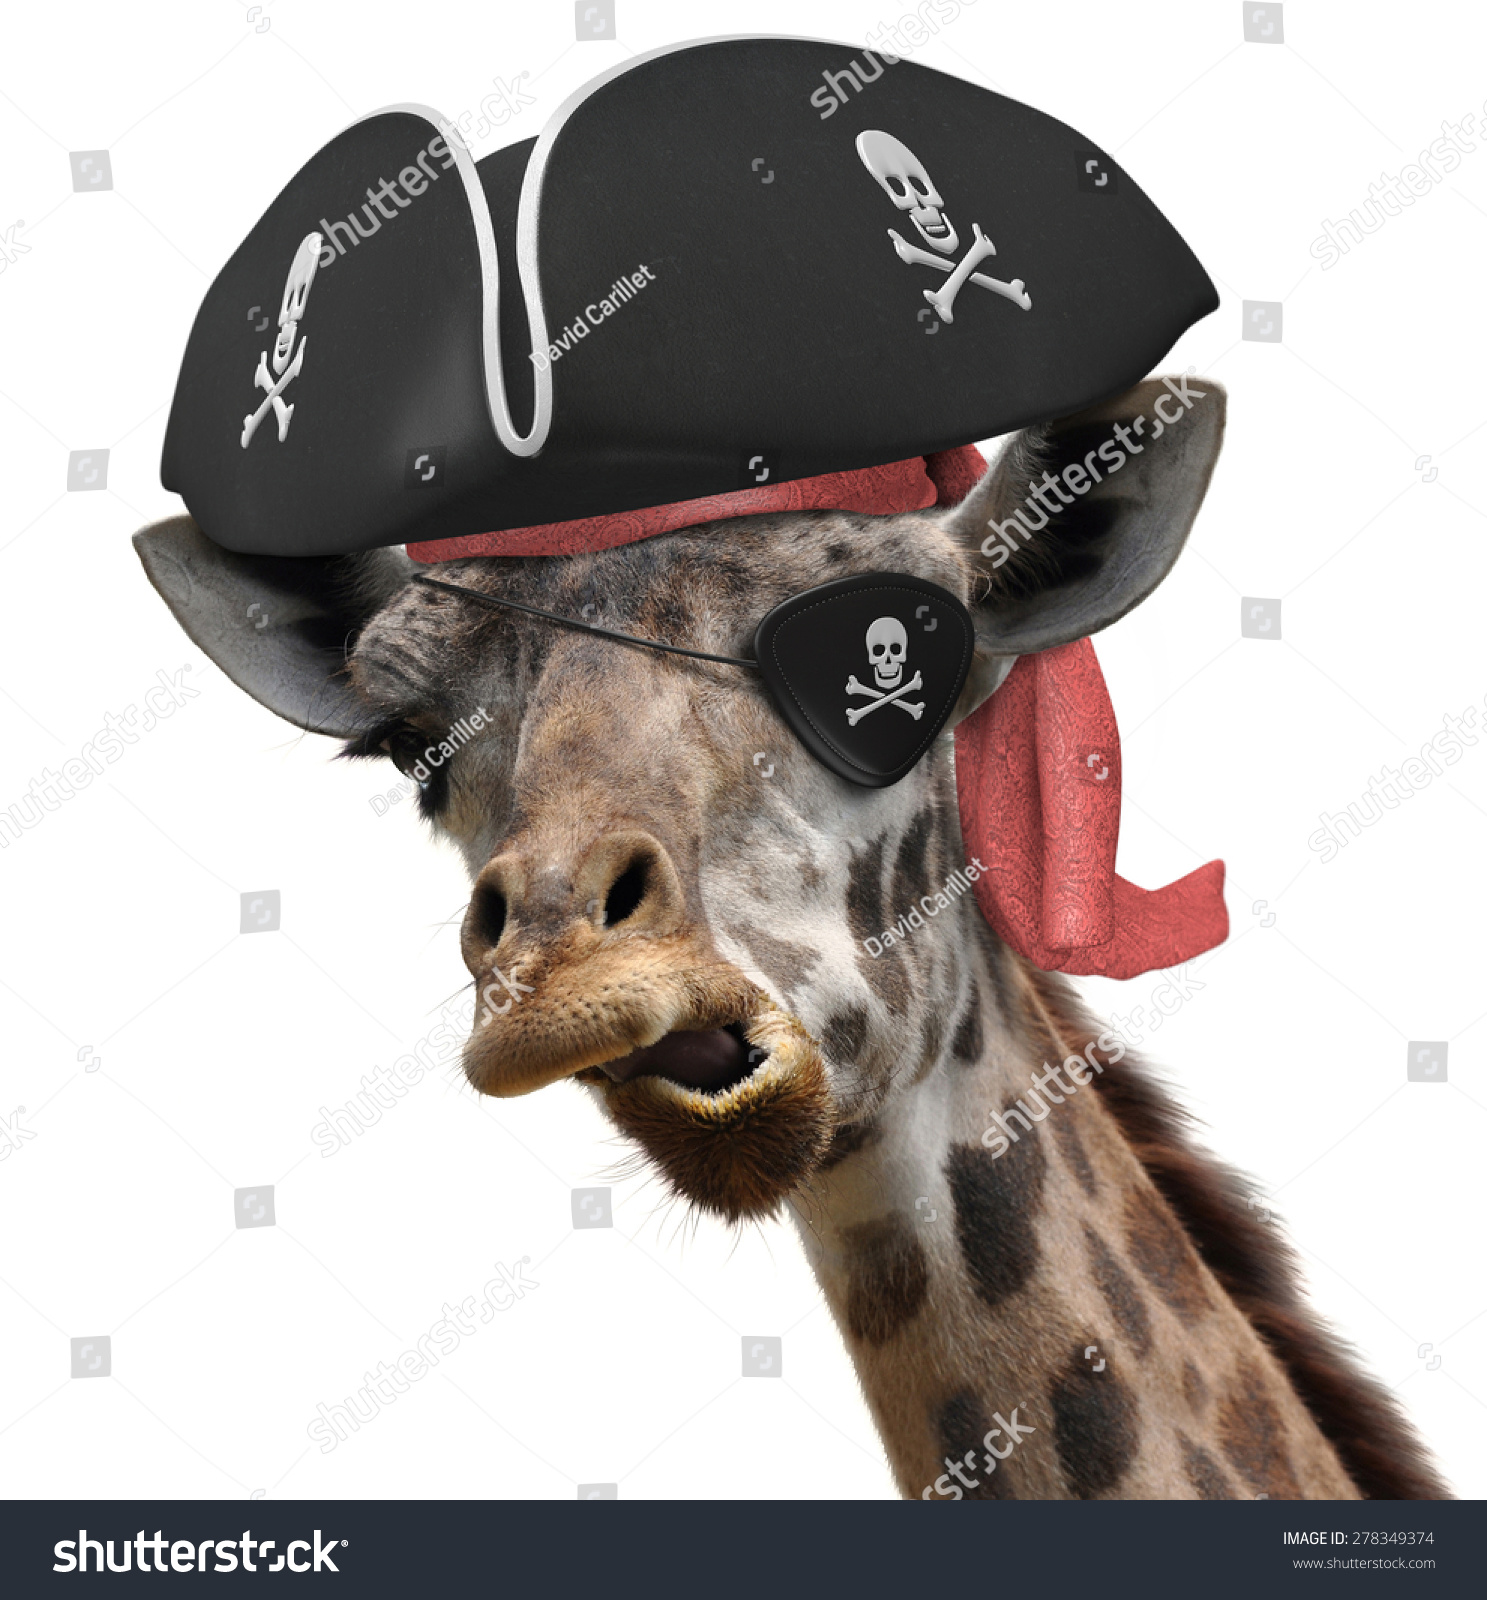 有趣的动物一个很酷的长颈鹿的照片穿着海盗帽